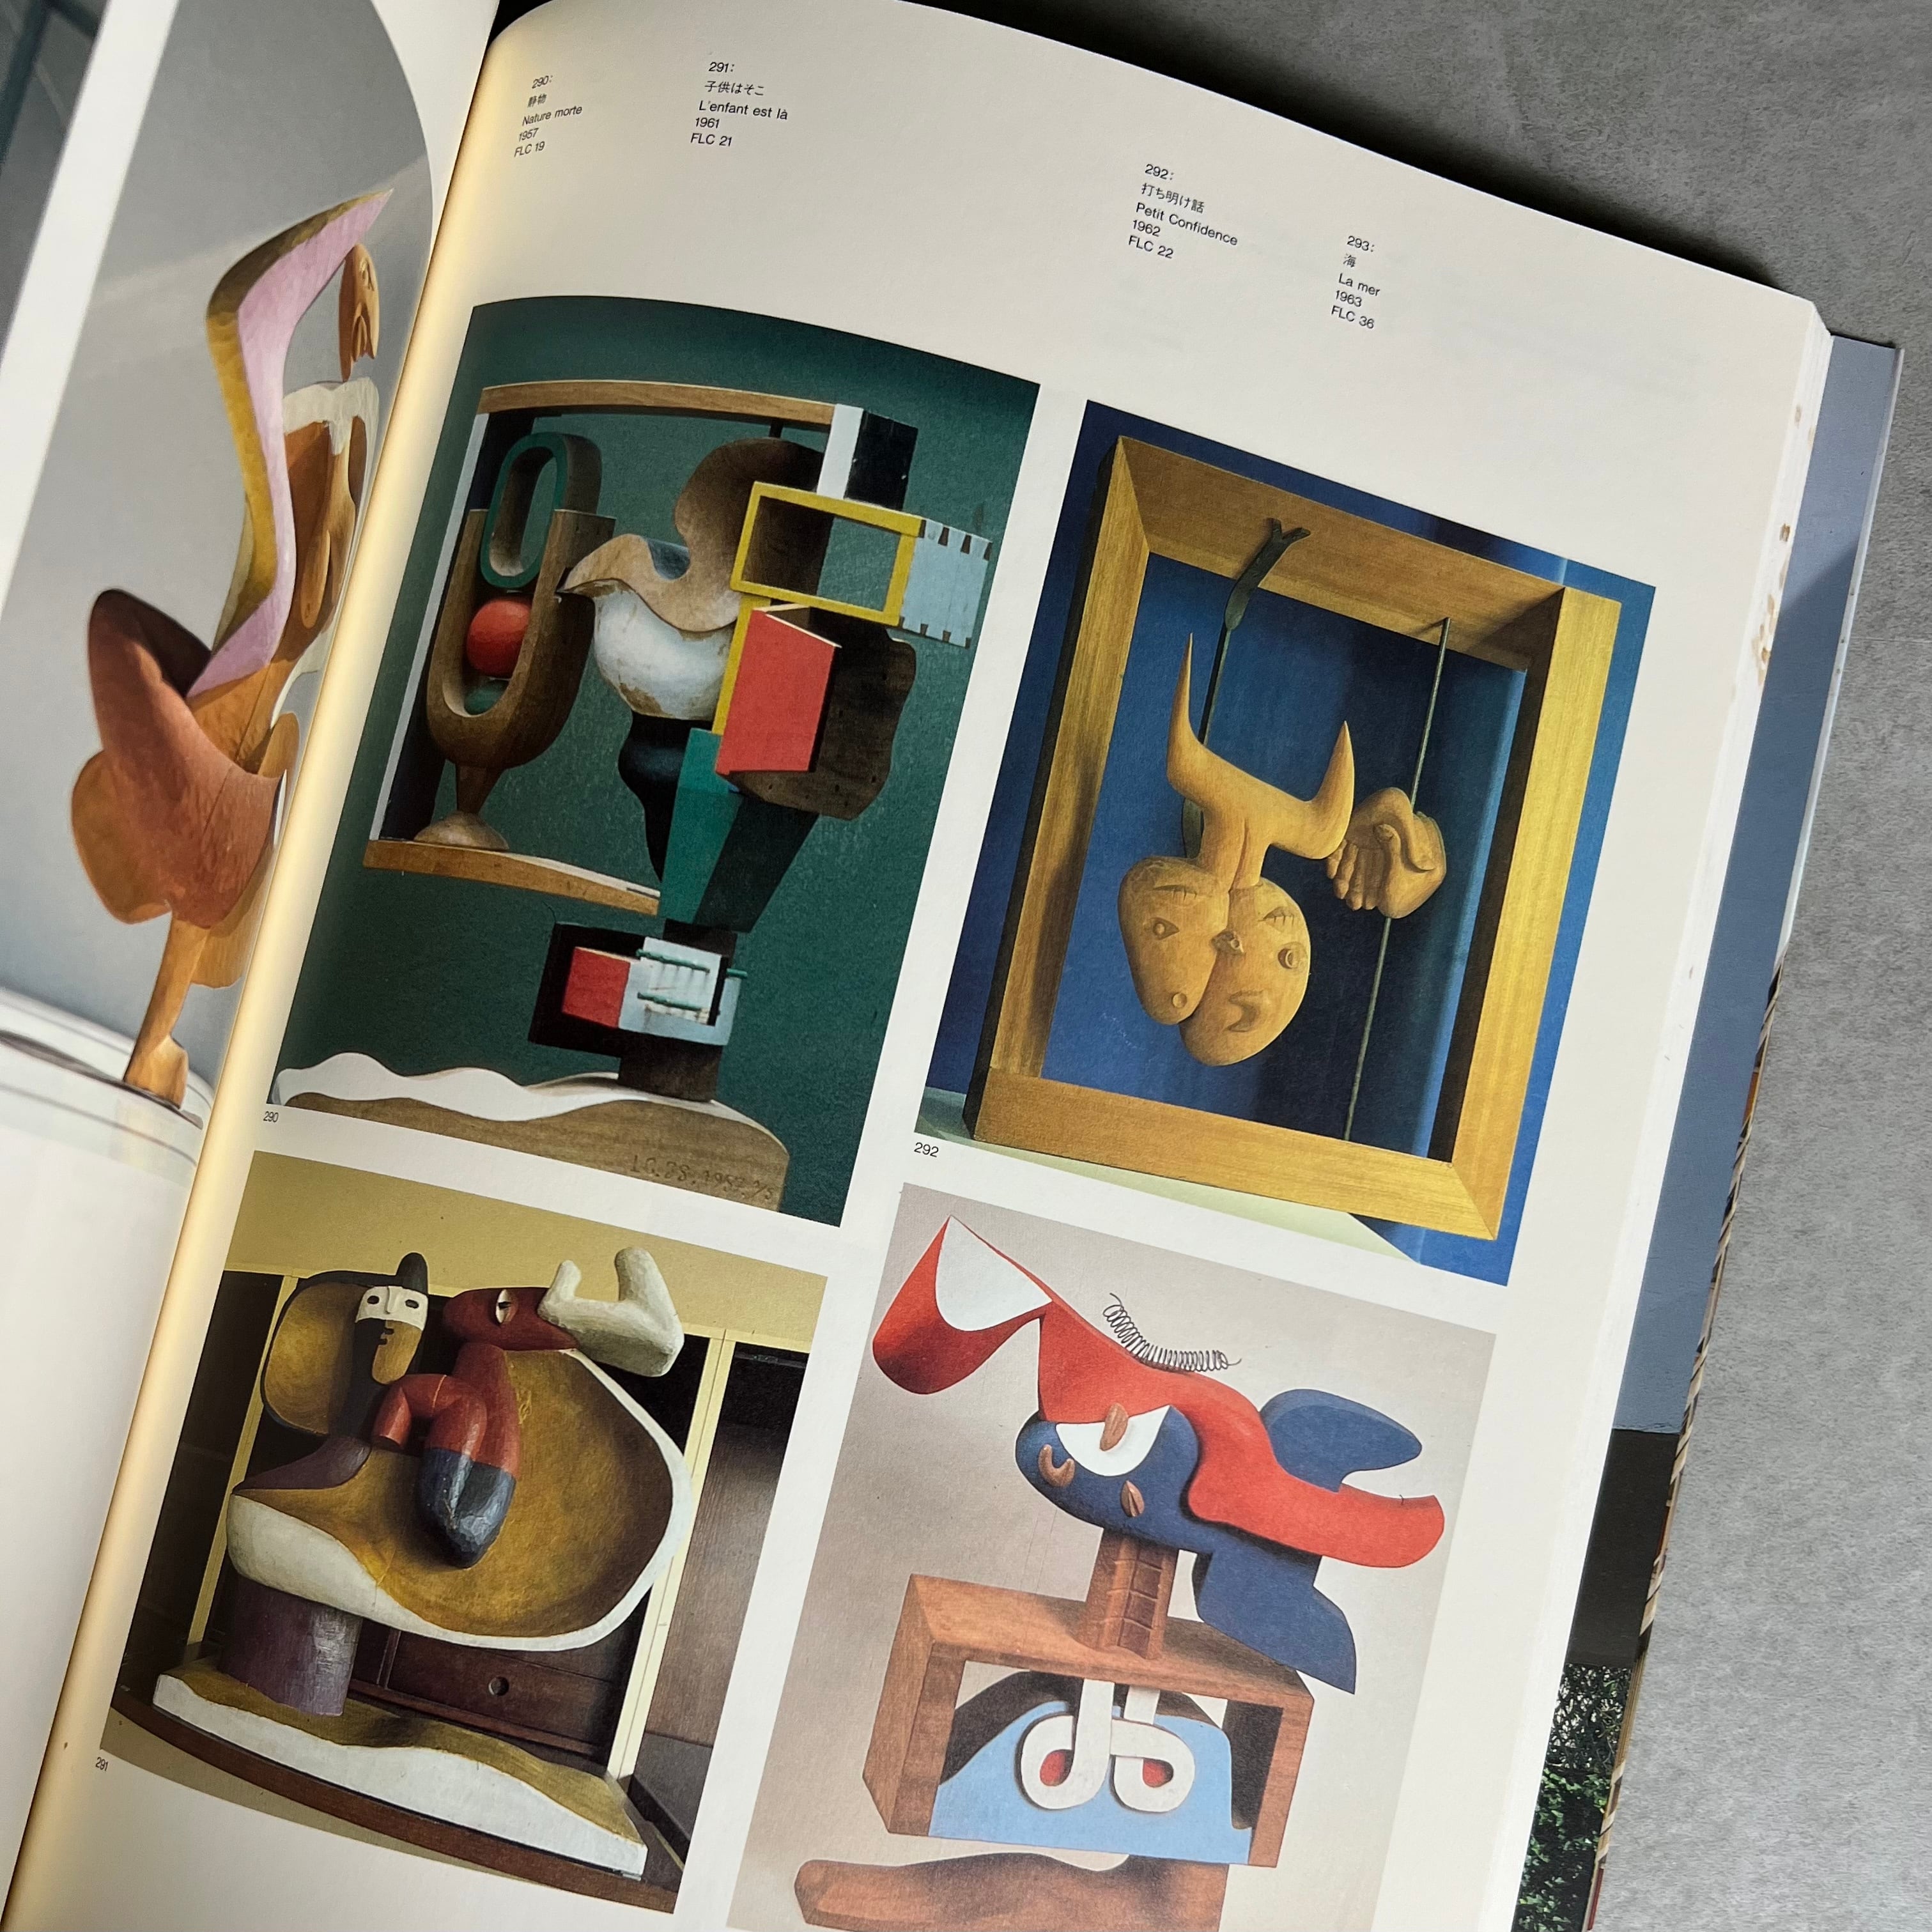 Le Corbusier 1996-1997】〜1996年にセゾン美術館で開催されたル・コルビュジエ展の貴重な大判図録〜 mark   collars (マークアンドカラーズ)